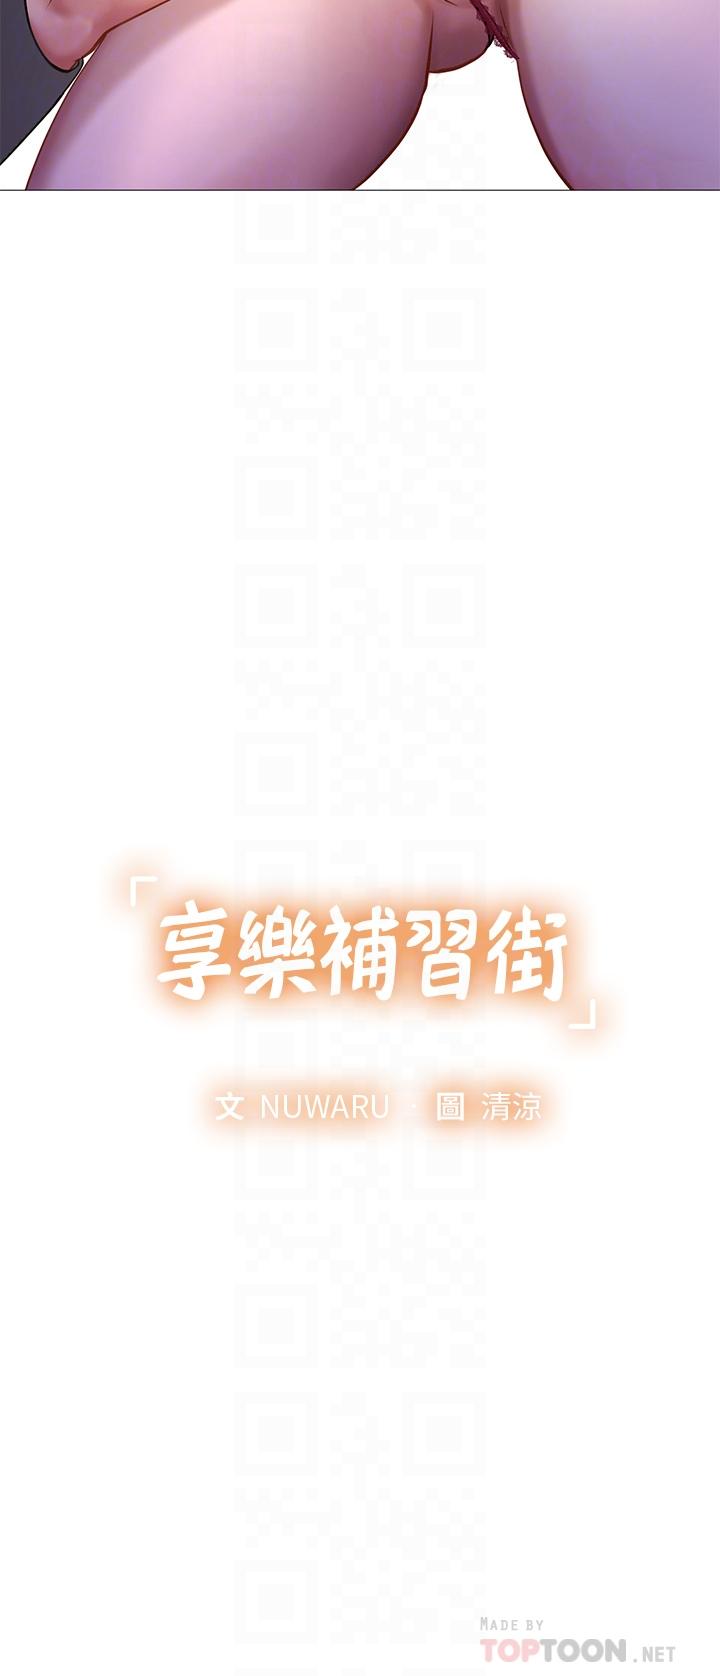 The image Should I Study At Noryangjin Raw - Chapter 89 - 796501 - ManhwaManga.io